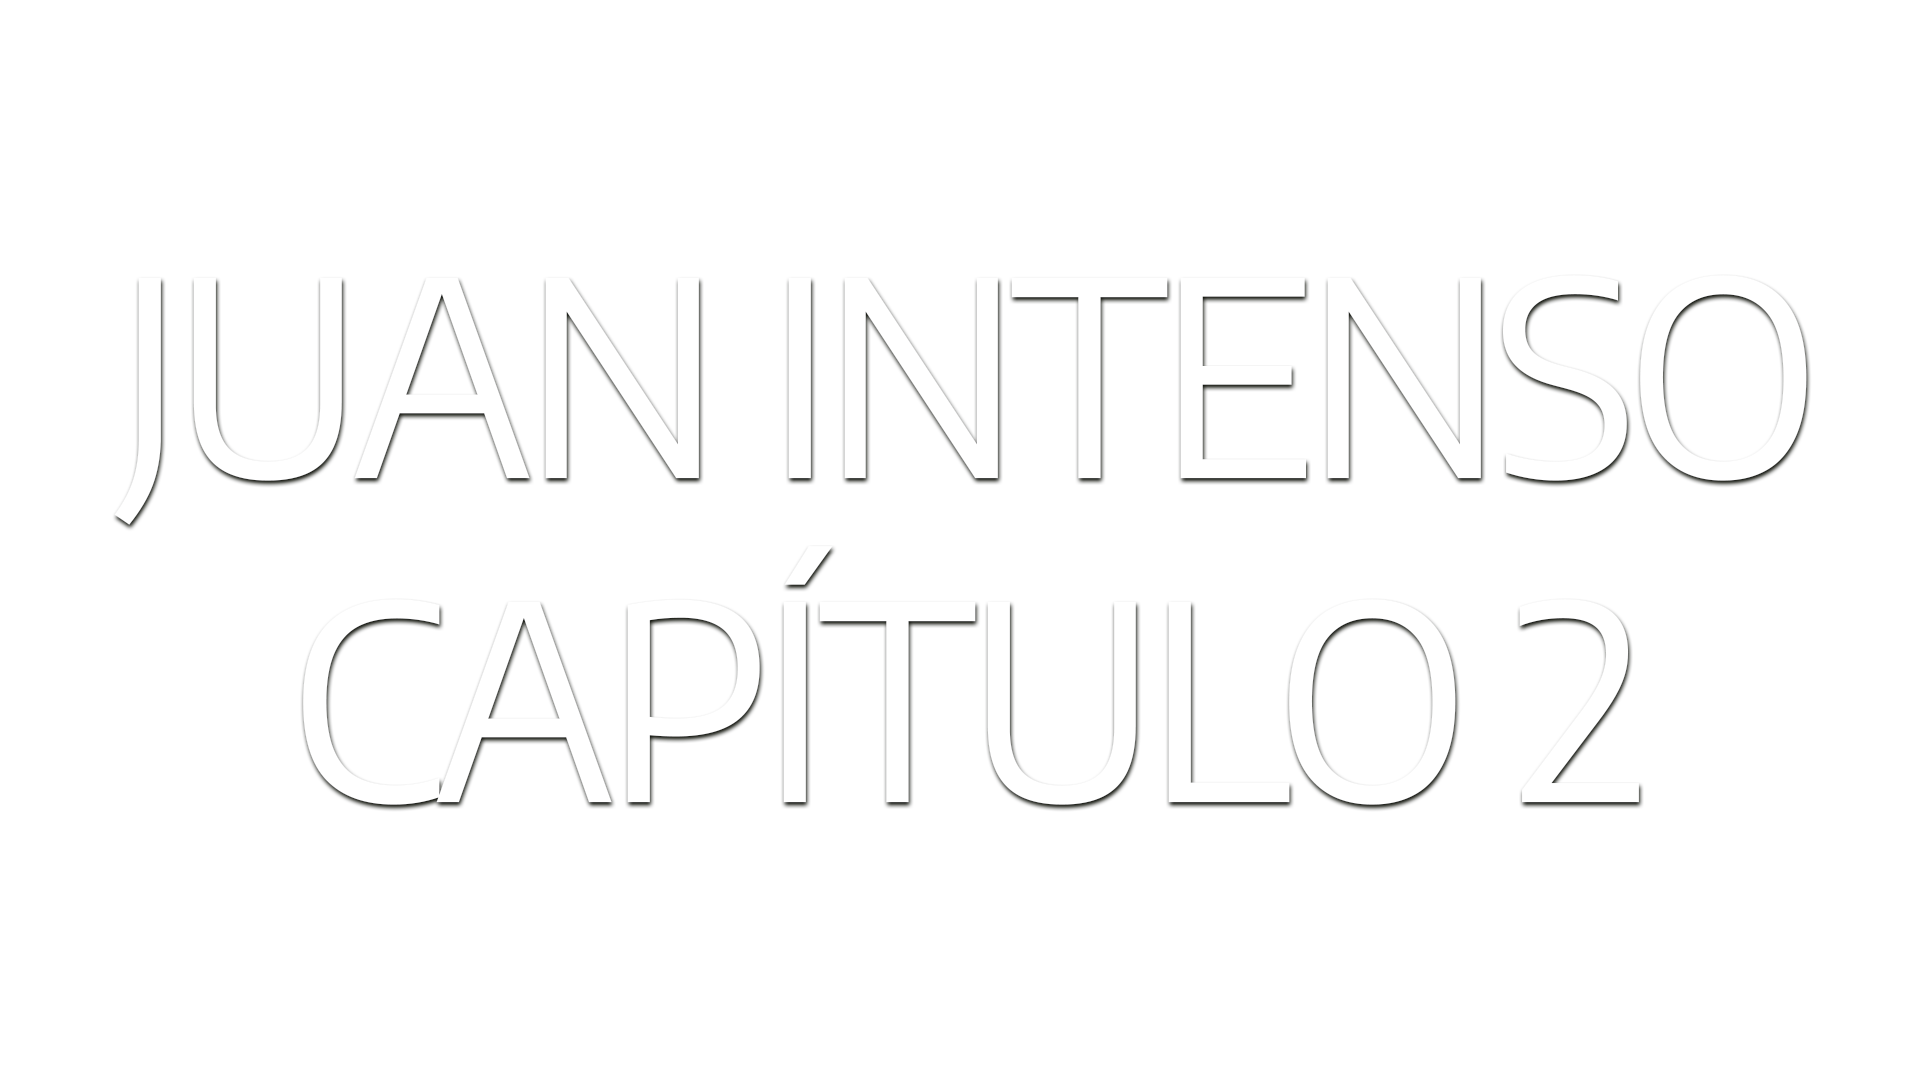 Juan Intenso – Ep 2